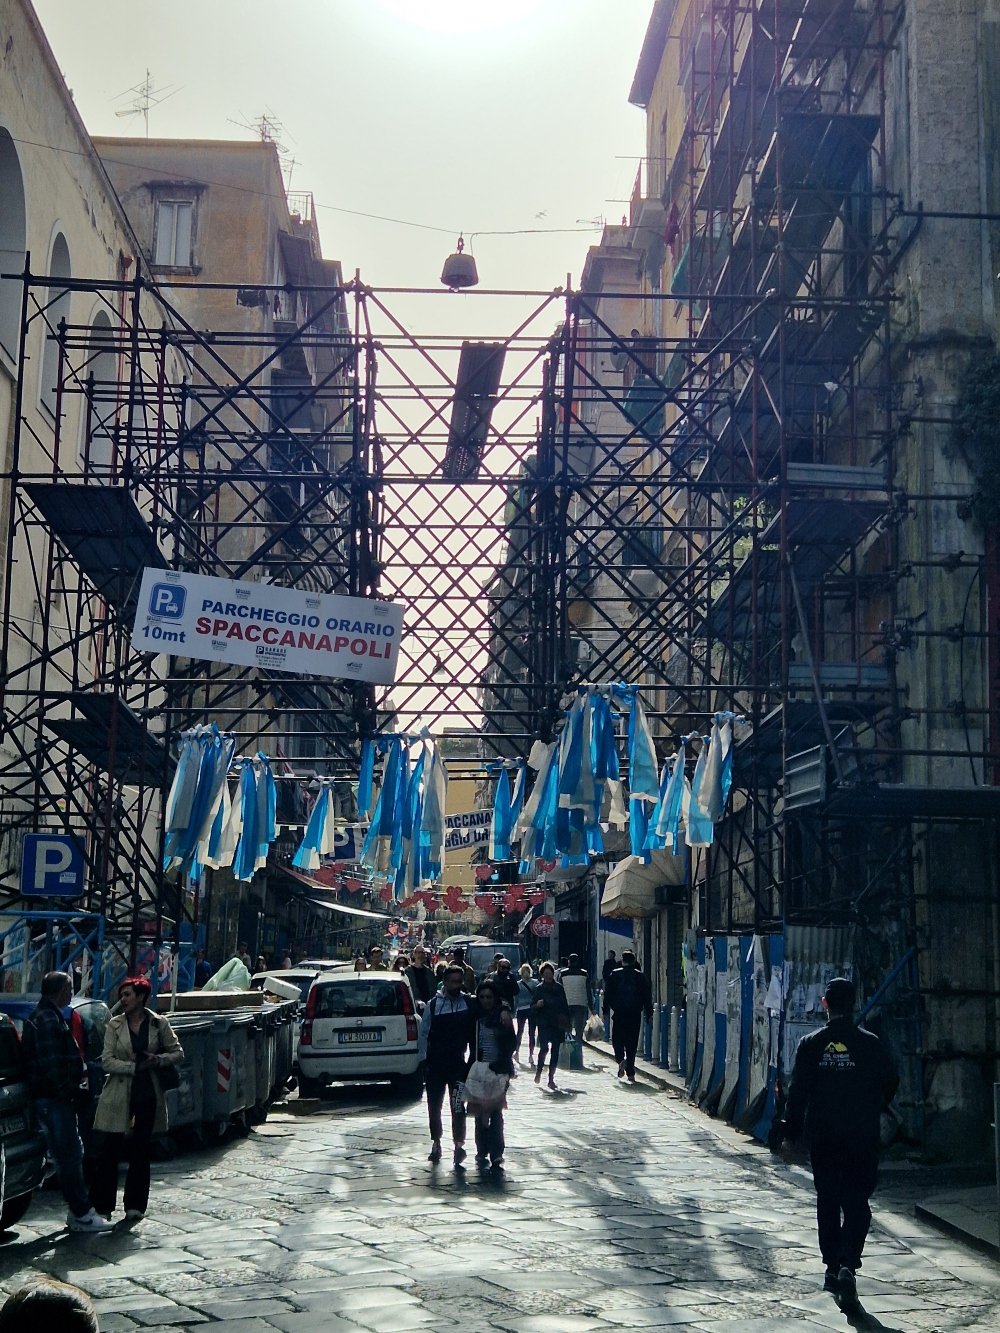 Obilježja Napolija u gradskim ulicama